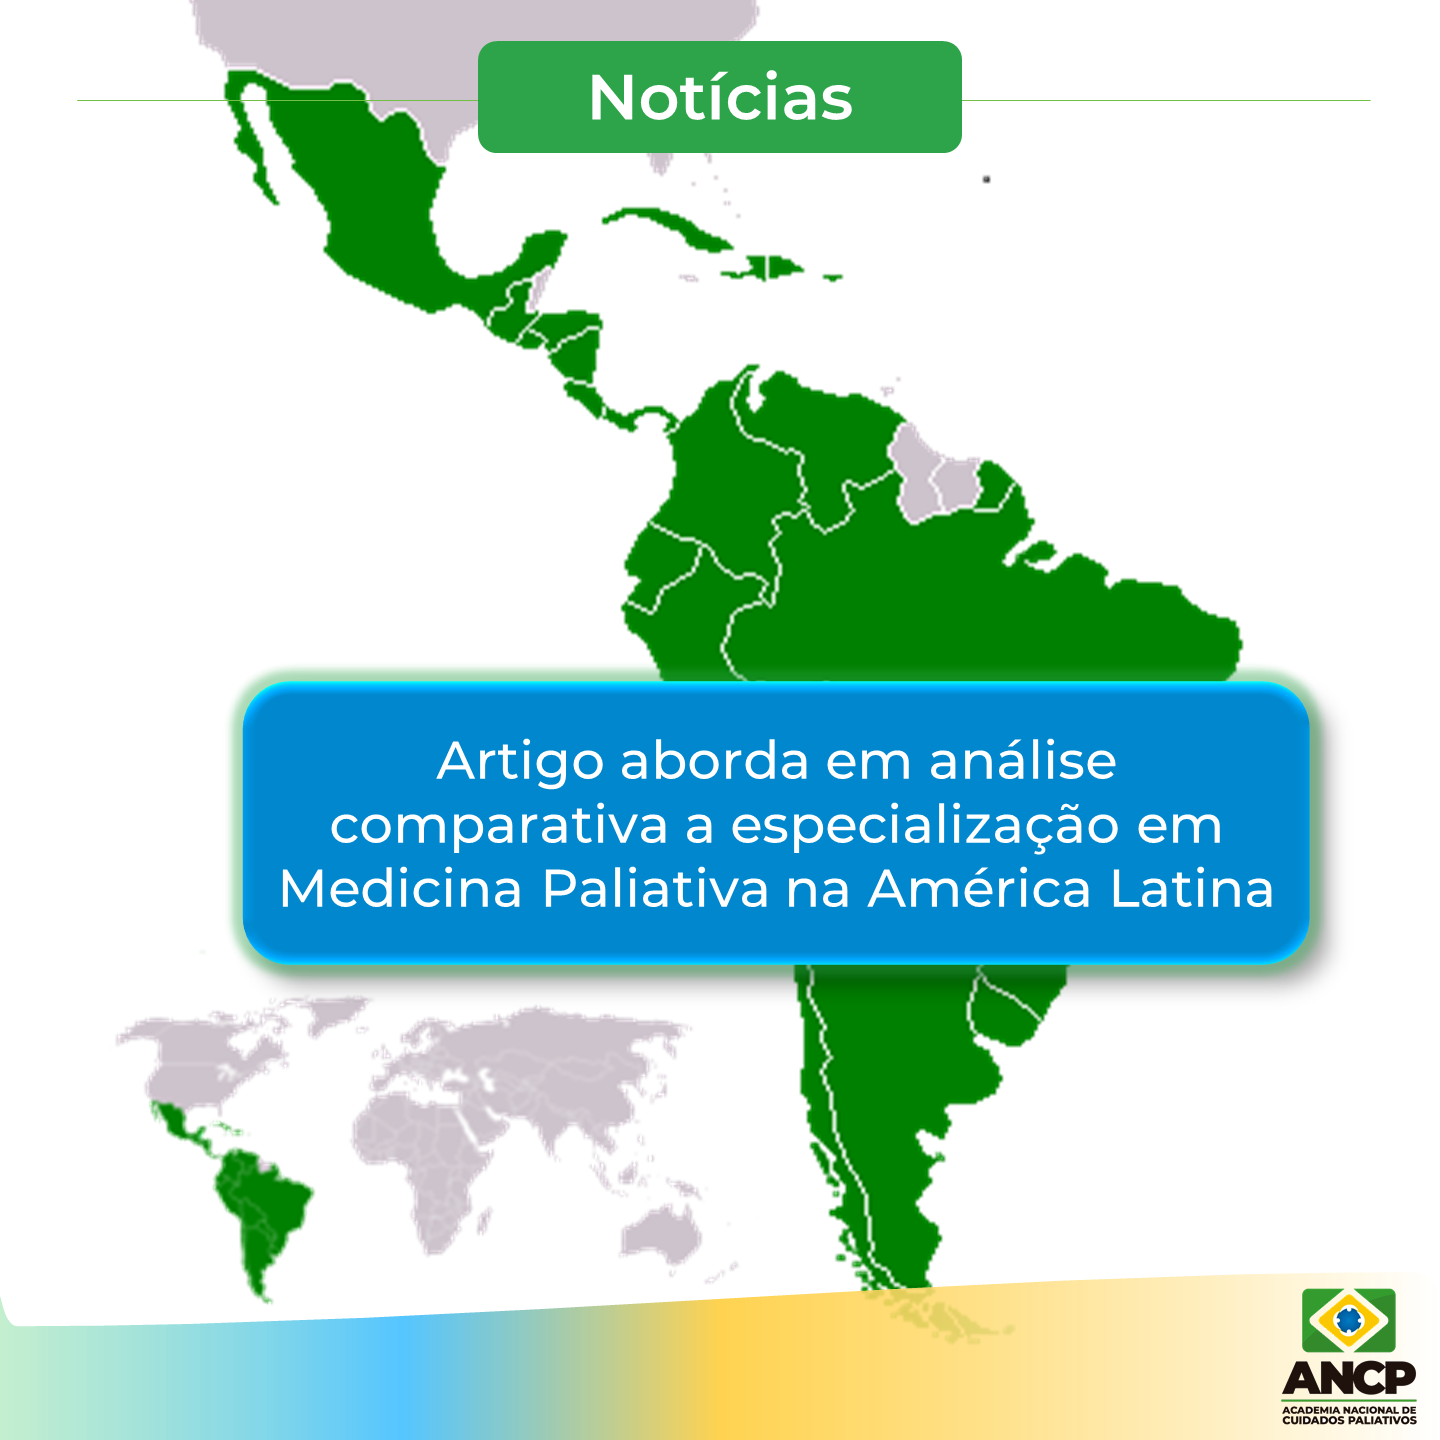 Artigo aborda em análise comparativa a especialização em Medicina Paliativa na América Latina